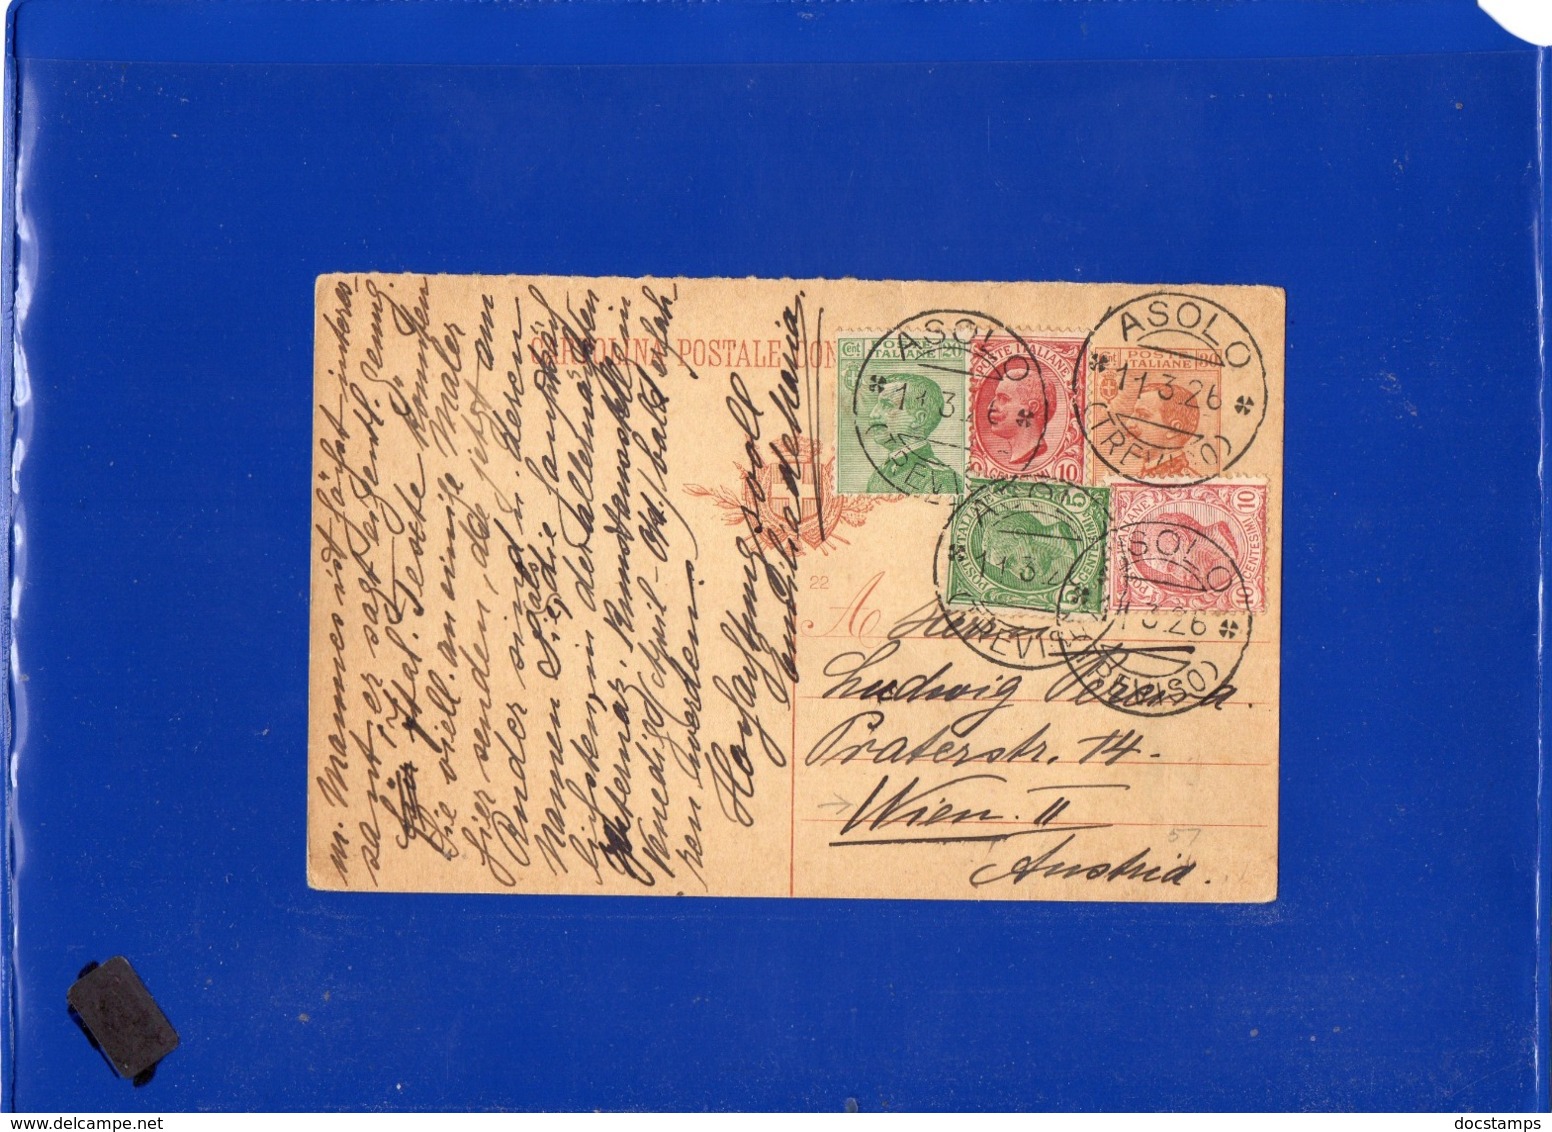 ##(DAN1910)-11-3-1926-Cartolina Postale Cent 30 Mill.22 Da Asolo (Treviso) Per L'estero, Vienna-Austria - Poststempel